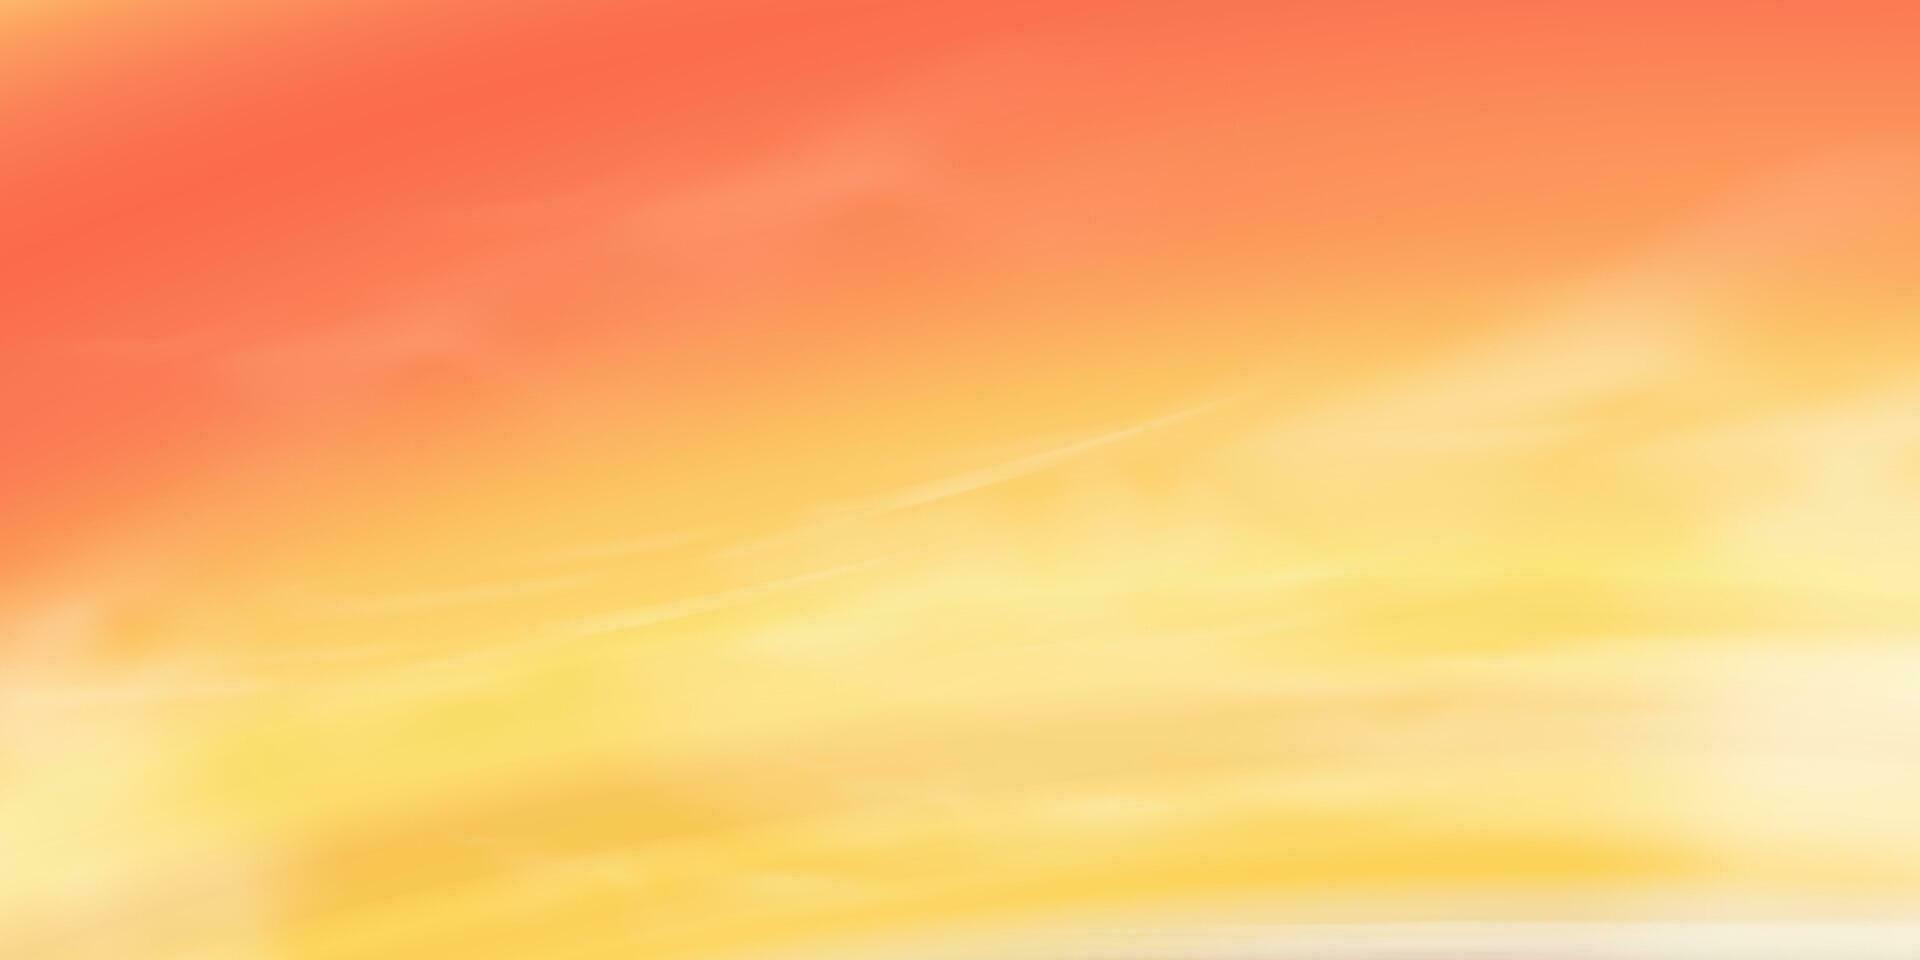 puesta de sol cielo fondo, amanecer naranja nube,amarillo,rosa cielo en Mañana verano, vector soleado otoño, naturaleza paisaje campo en tarde.invierno luz del sol, dibujos animados ilustración horizonte primavera Dom abajo por mar